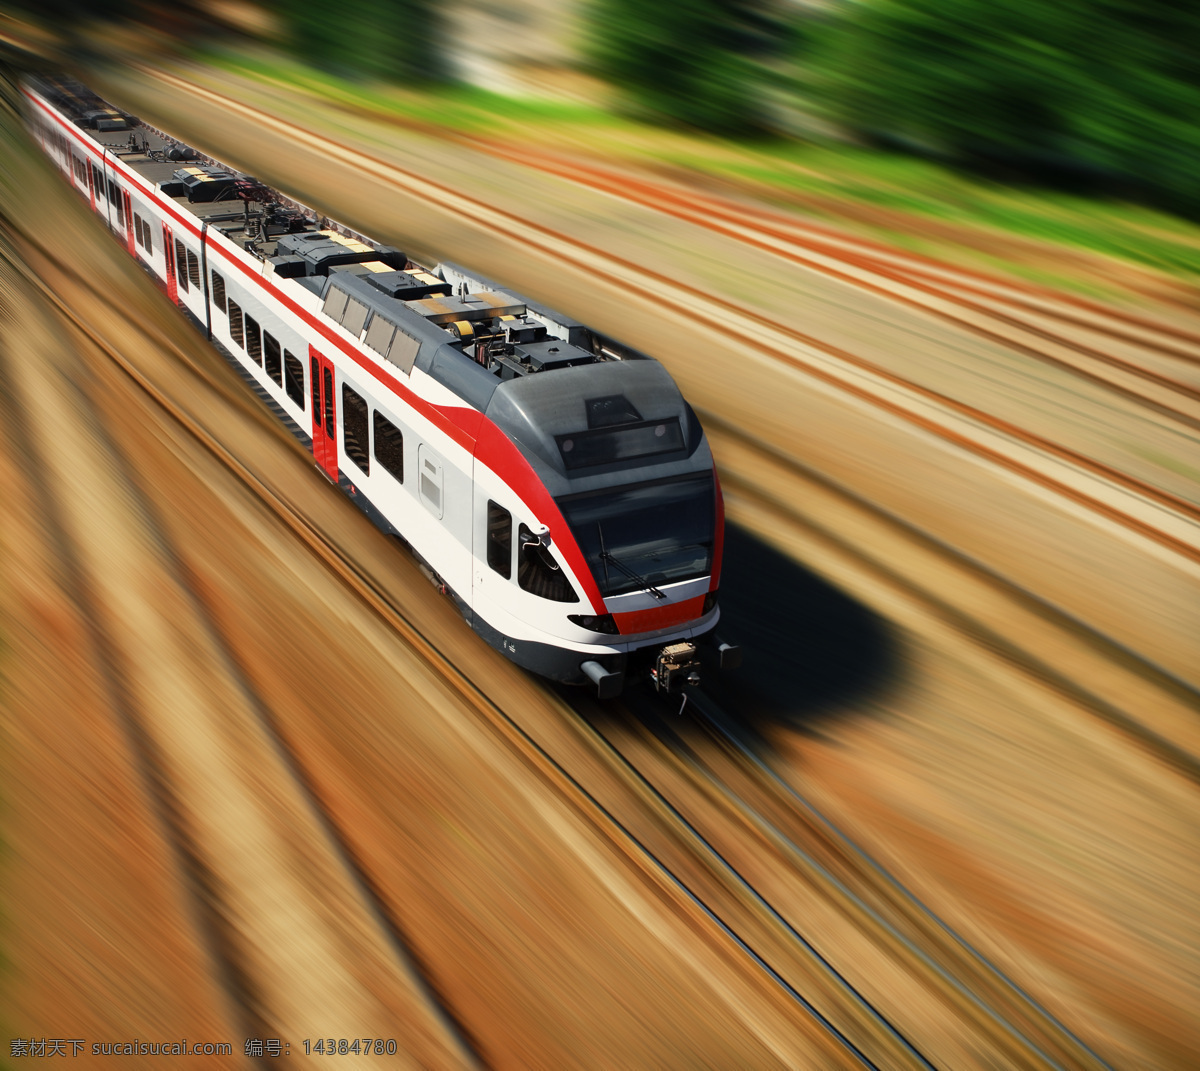 高铁 动车 动车组 火车 列车 铁路 高速列车 铁轨 子弹头 和谐号 高速铁路 现代科技 交通工具 棕色